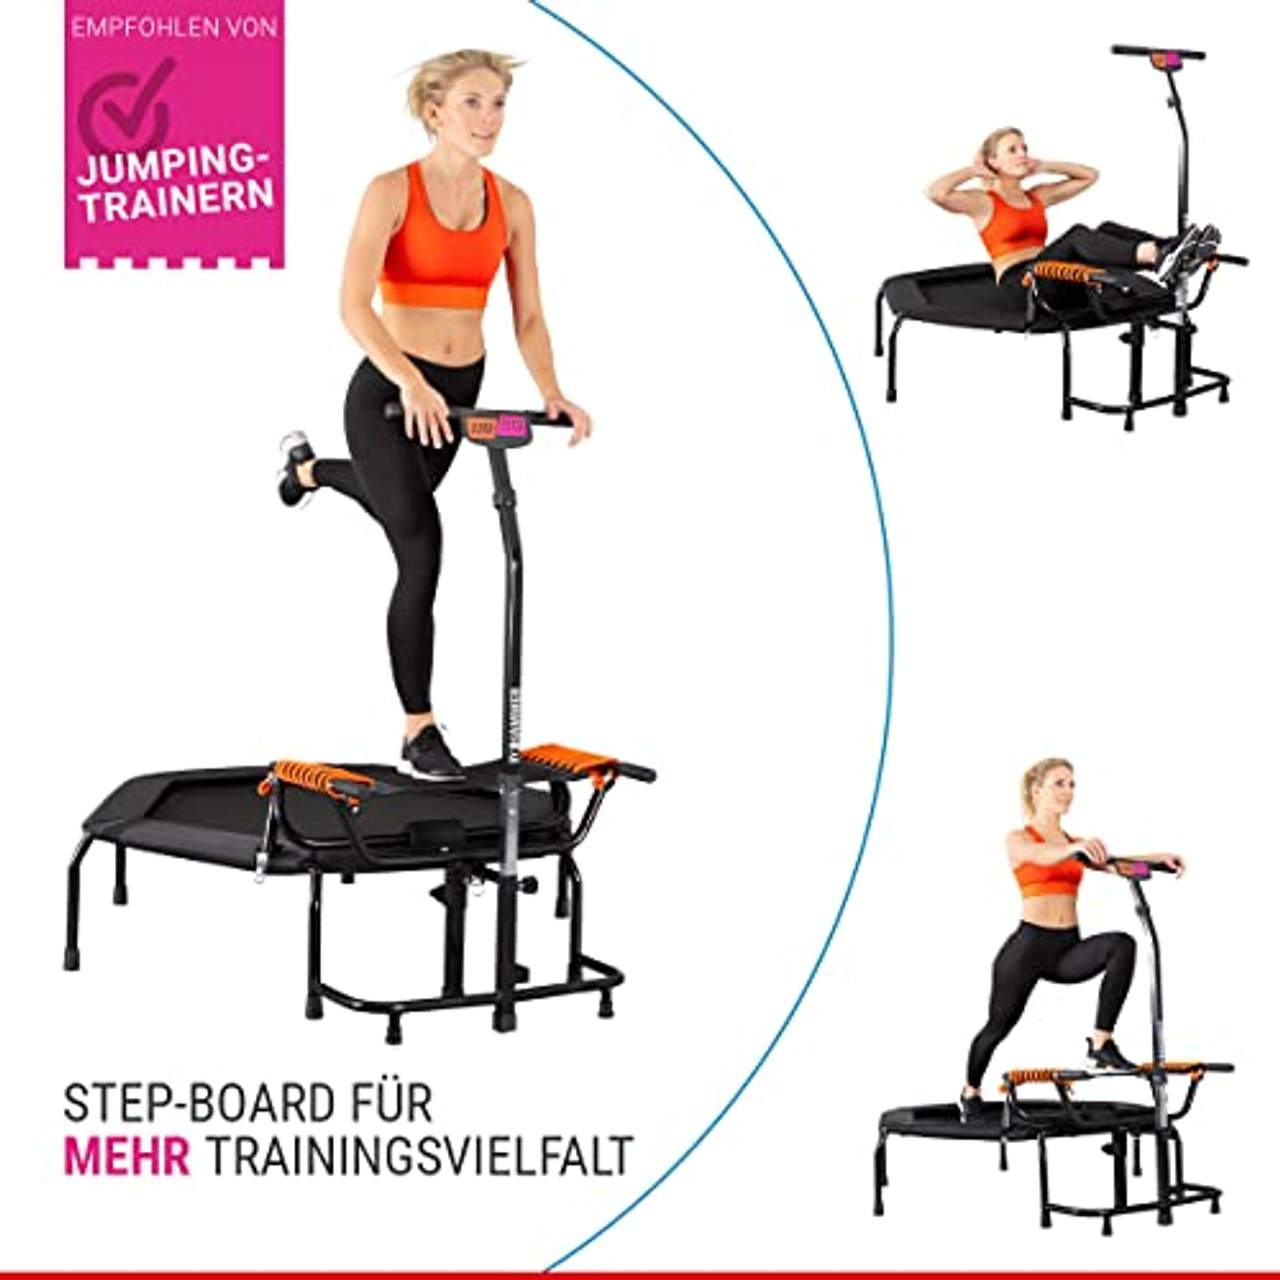 HAMMER Fitness-Trampolin JumpStep Flexibles & gelenkschonendes Step-Board